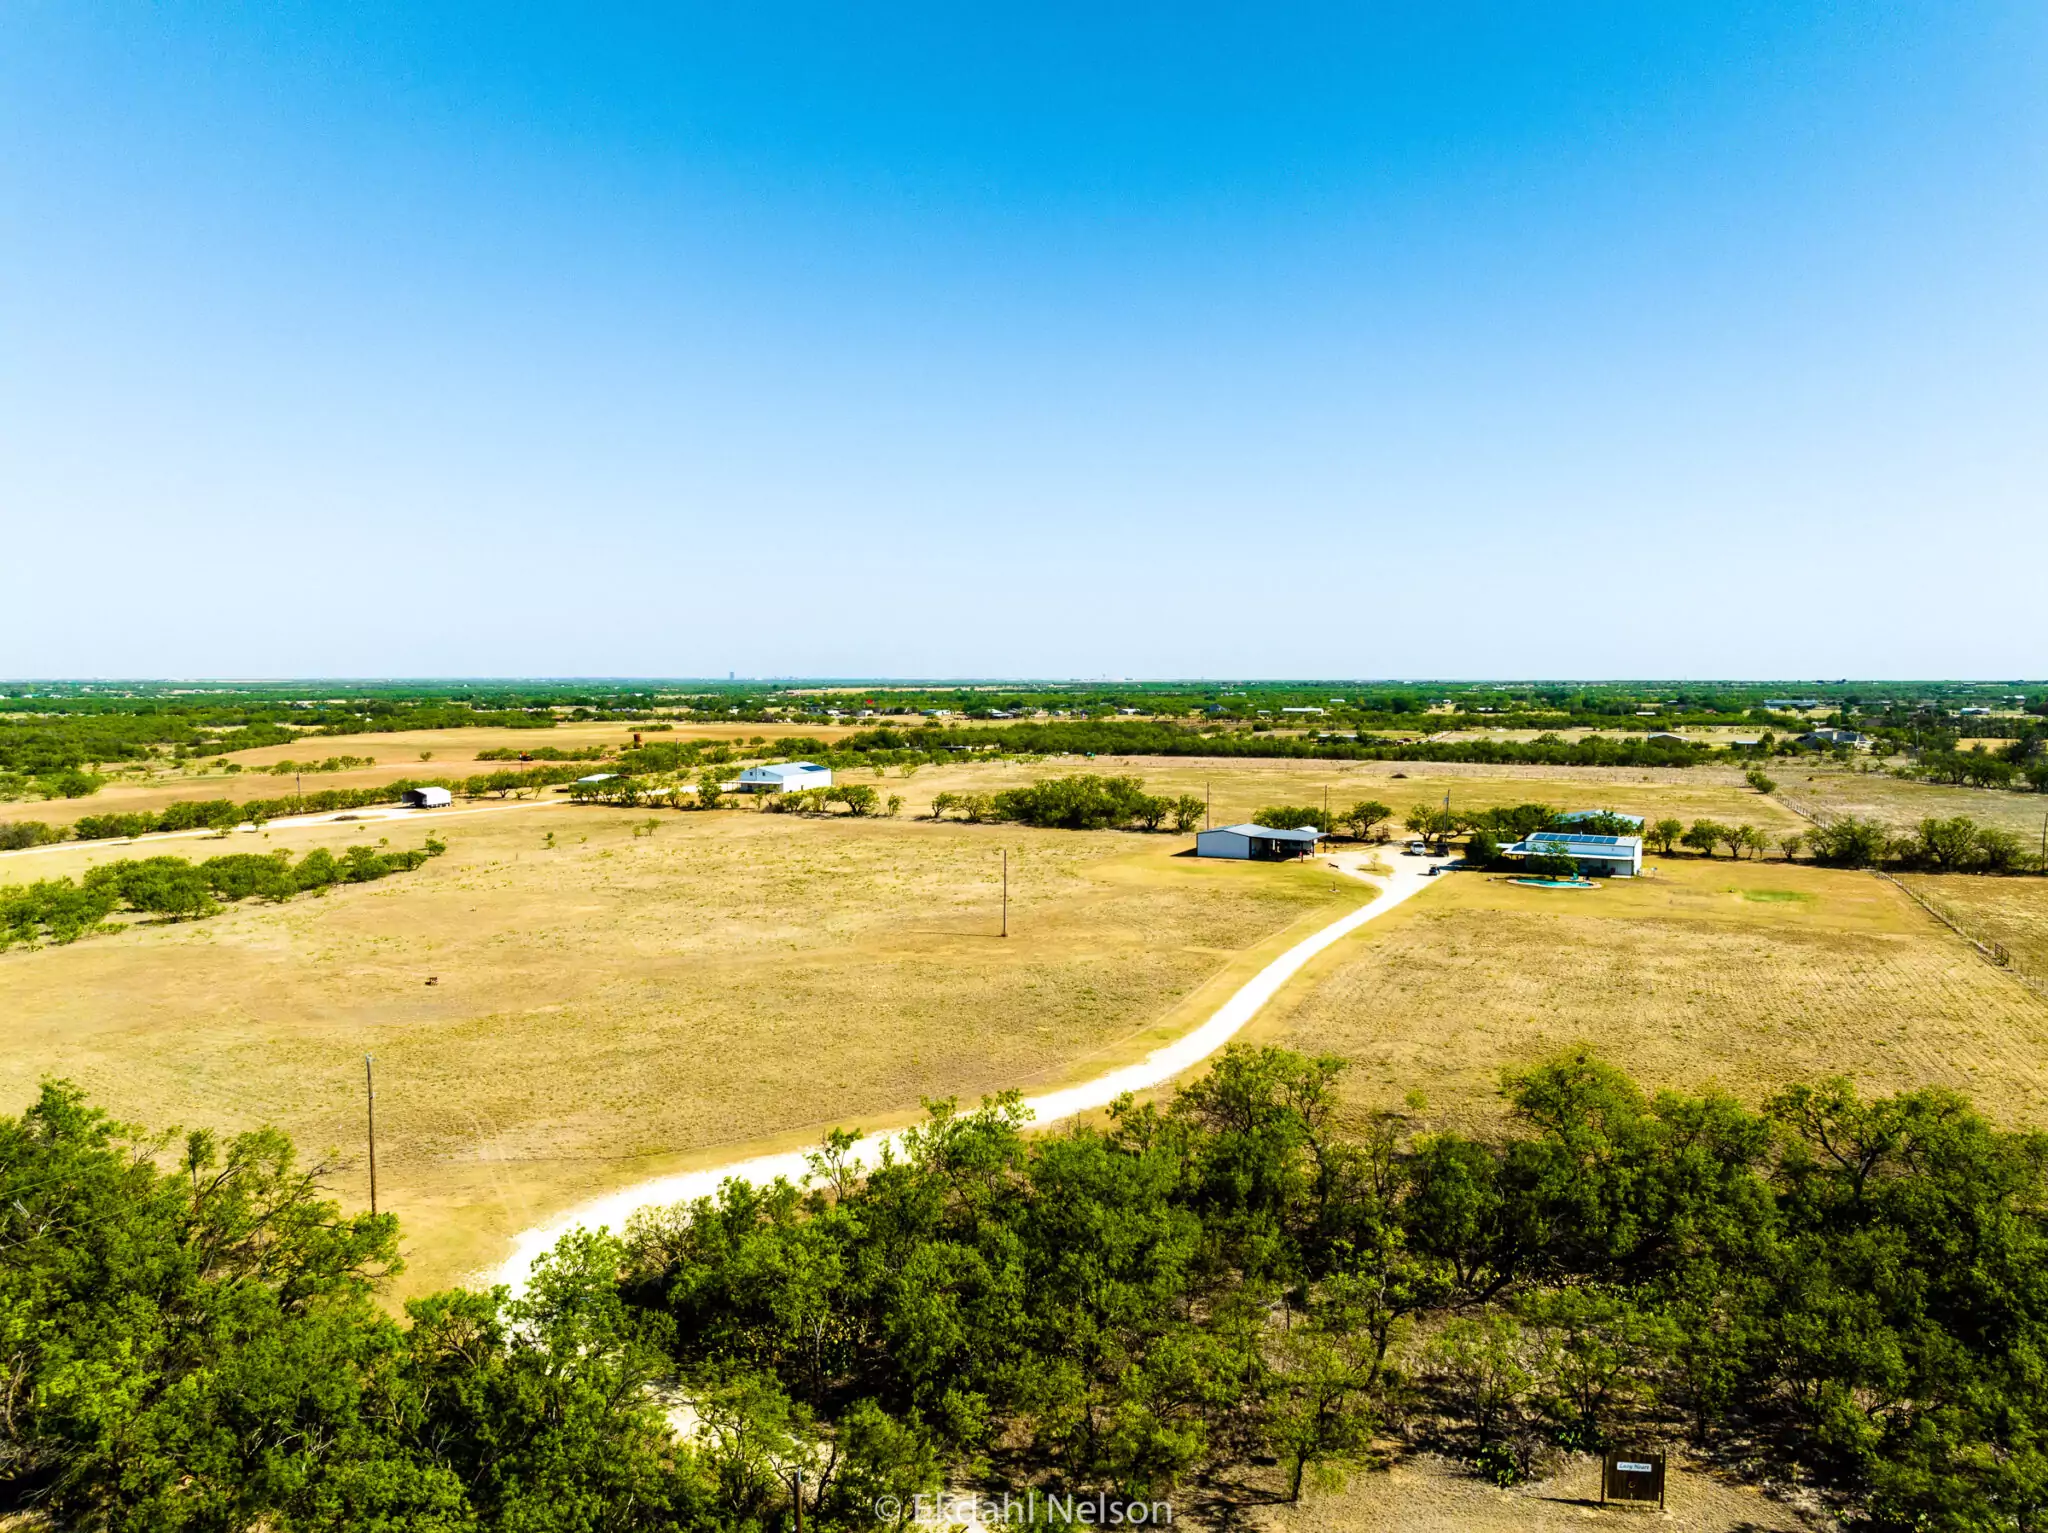 Ranch Land for Sale Abilene TX - Ekdahl Nelson Real Estate